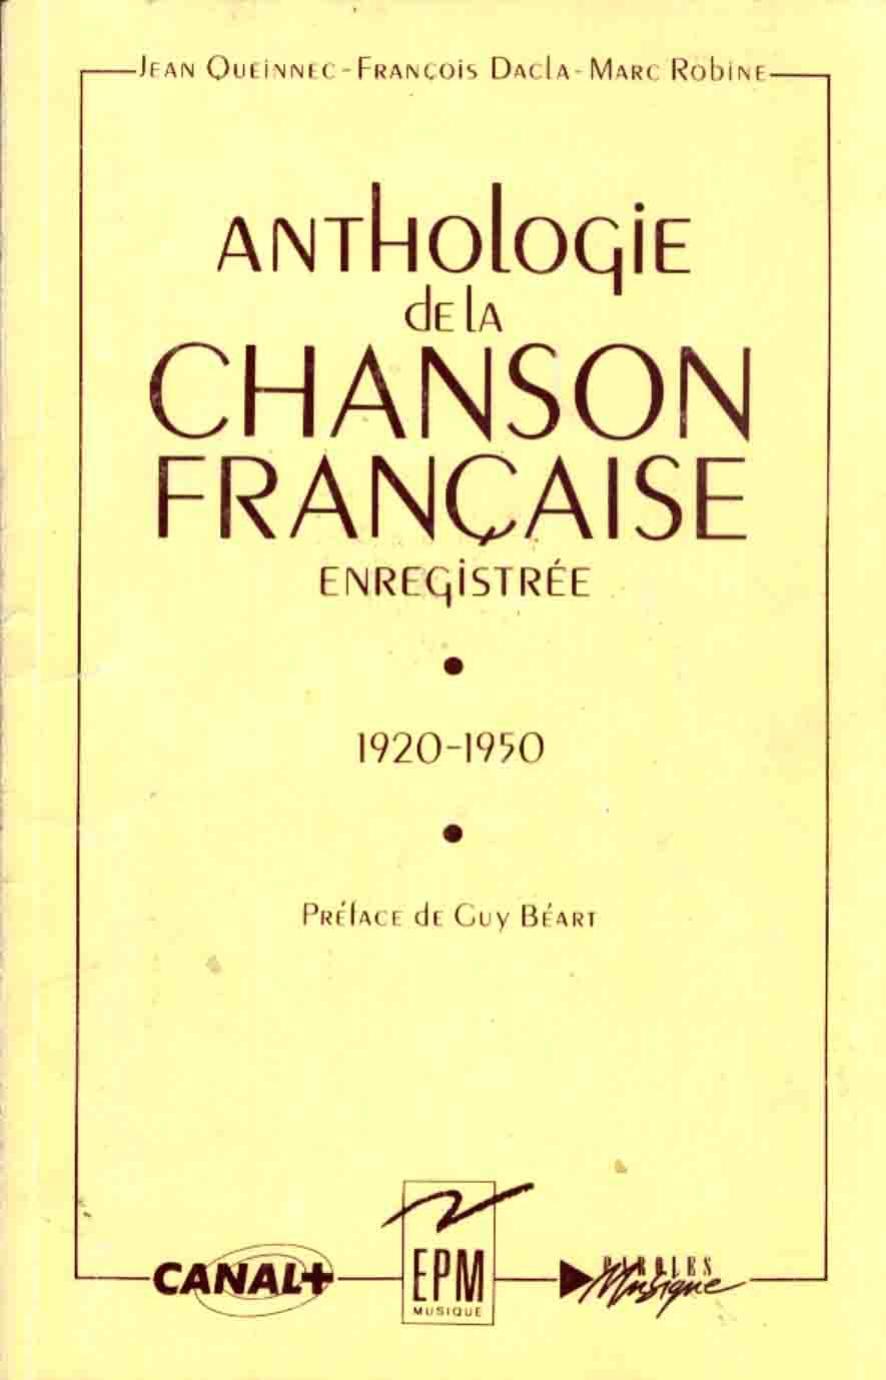 Anthologie de la chanson francaise enregistree 1950